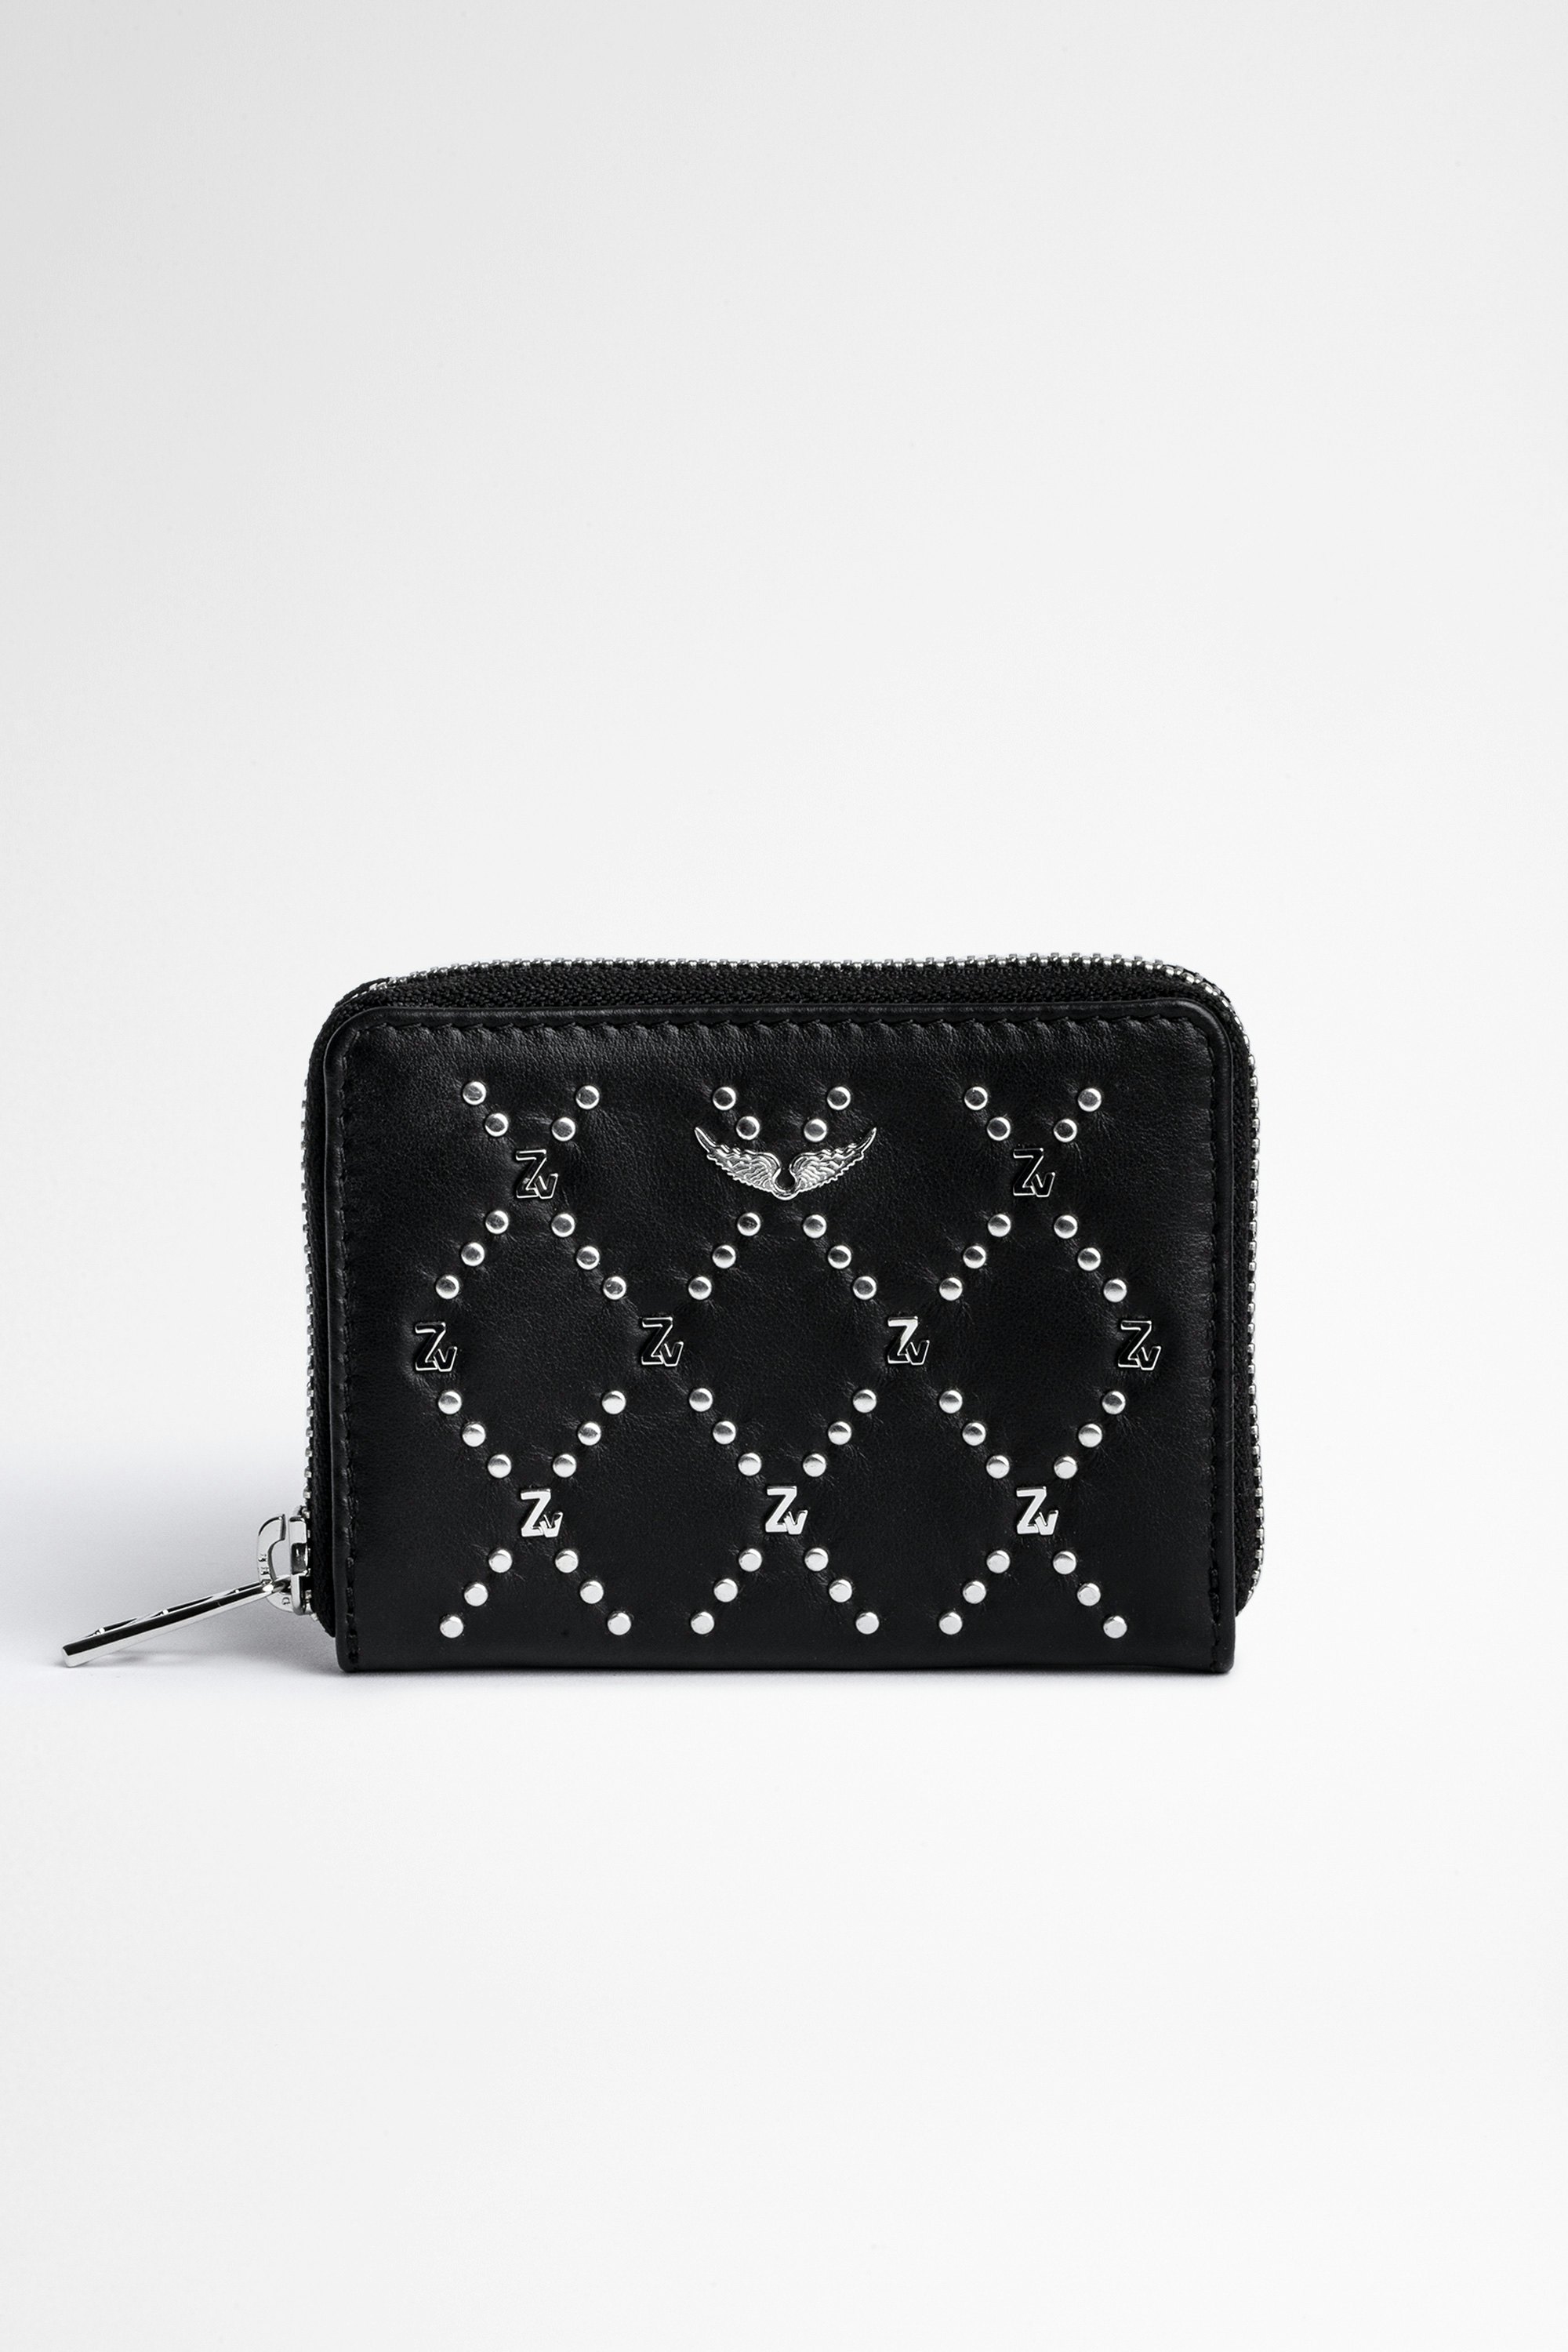 ZV Mini Wallet Women's black leather studded wallet